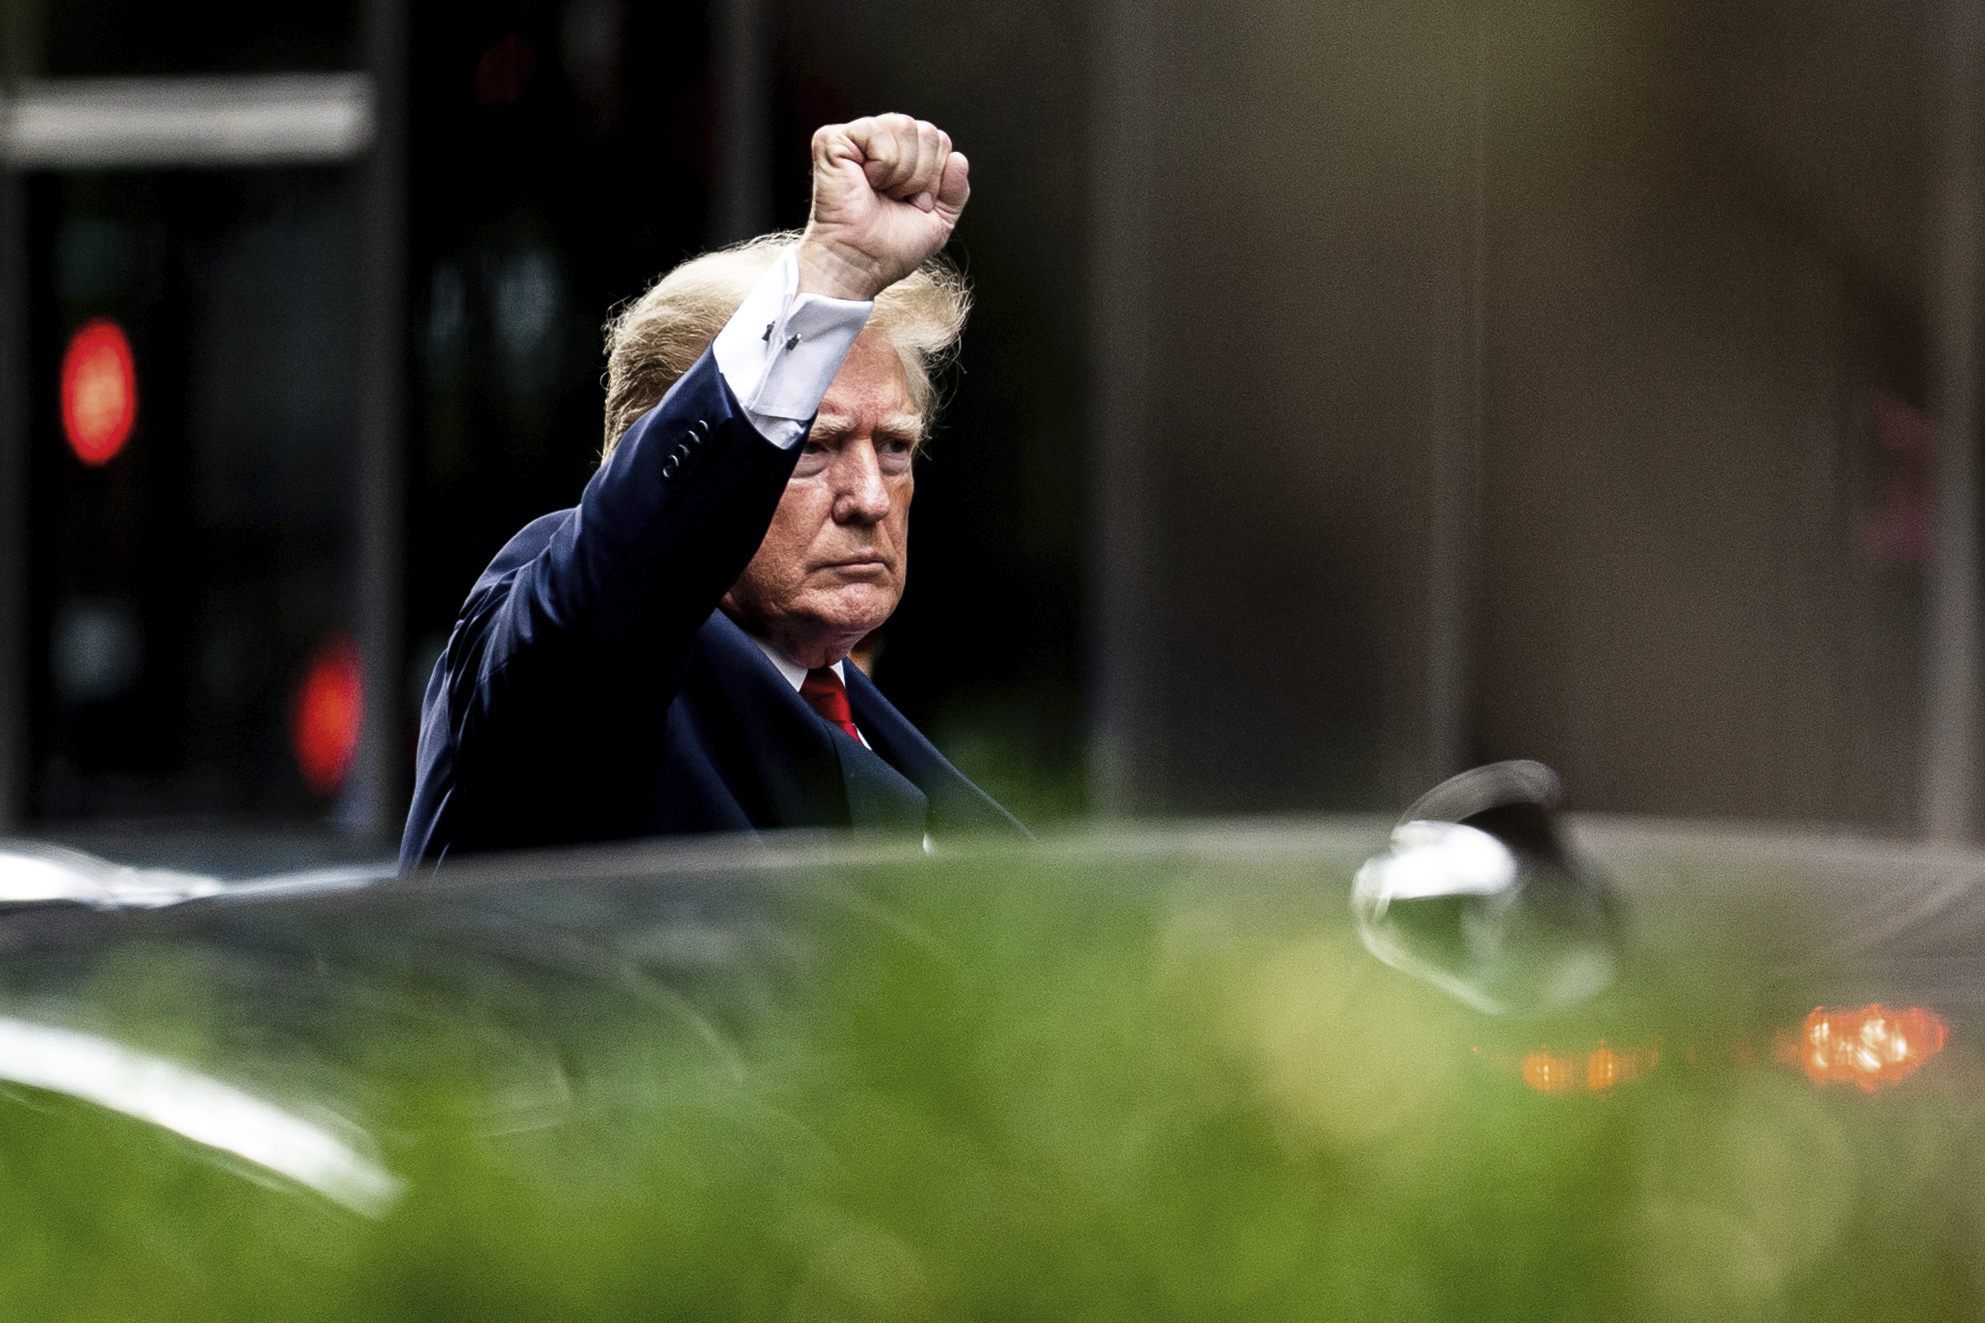 Donald Trump verlässt den Trump Tower auf dem Weg zur New Yorker Generalstaatsanwaltschaft.